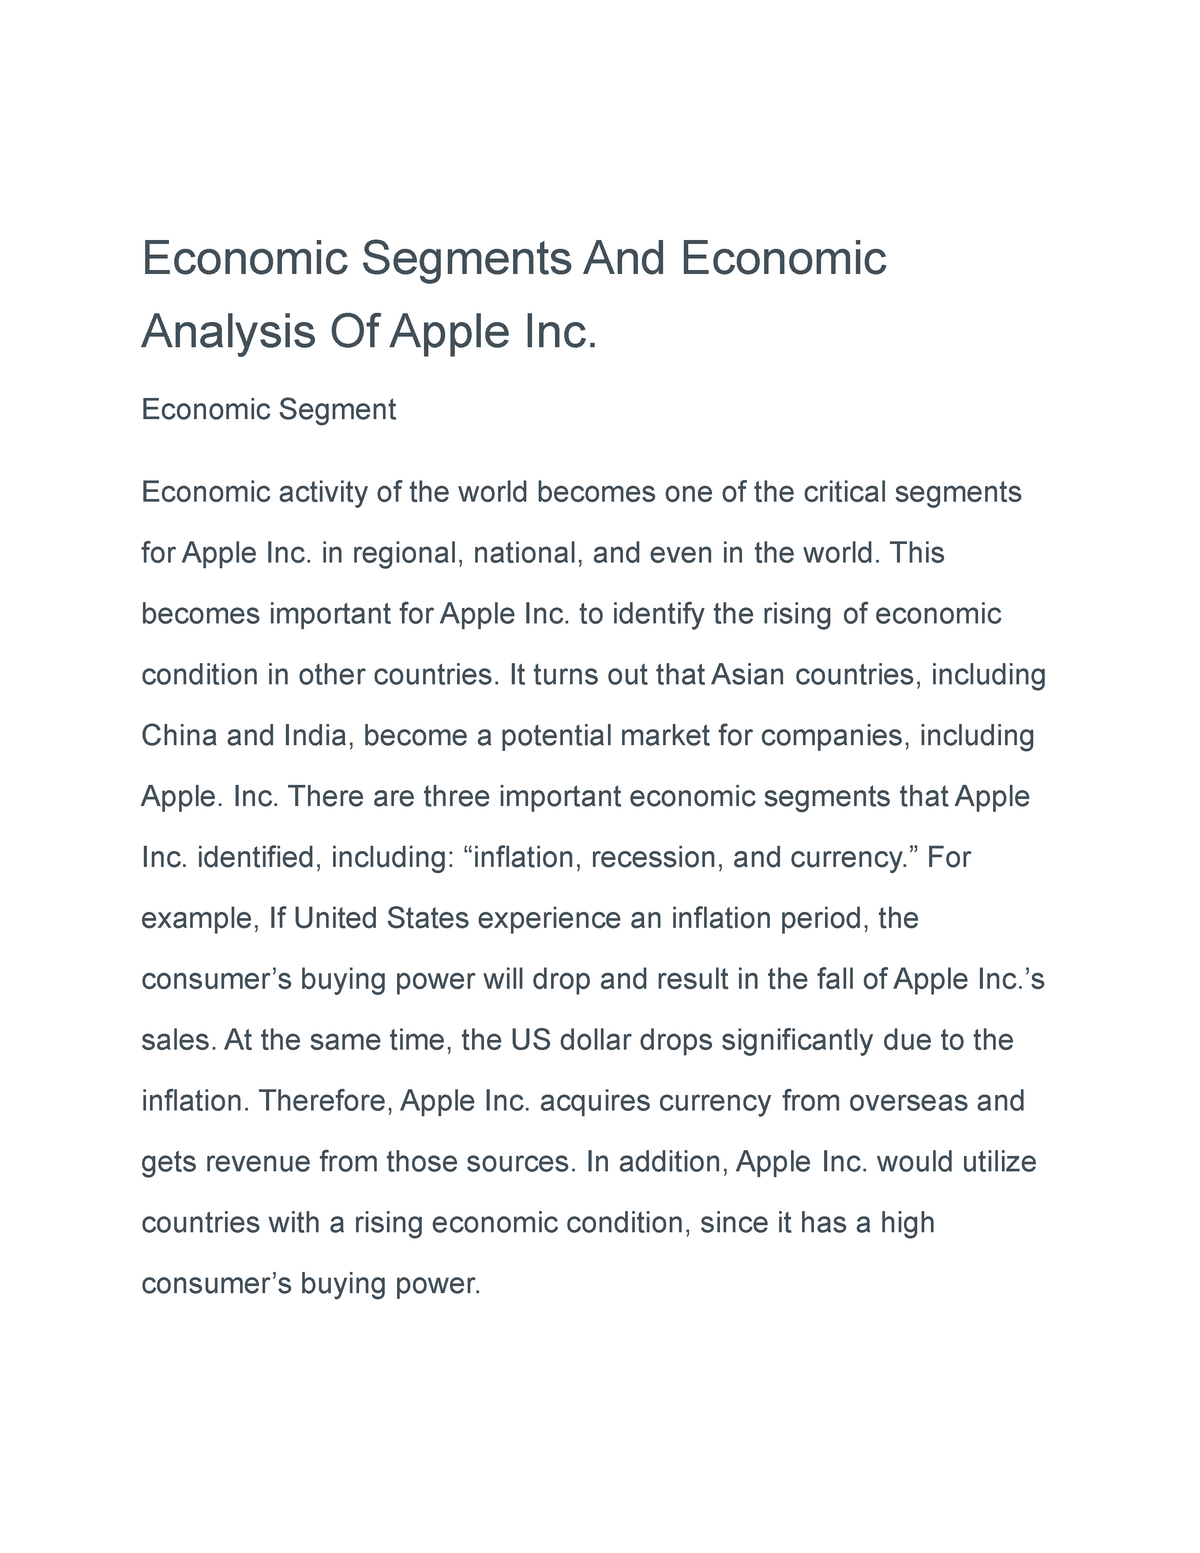 apple inc economic analysis